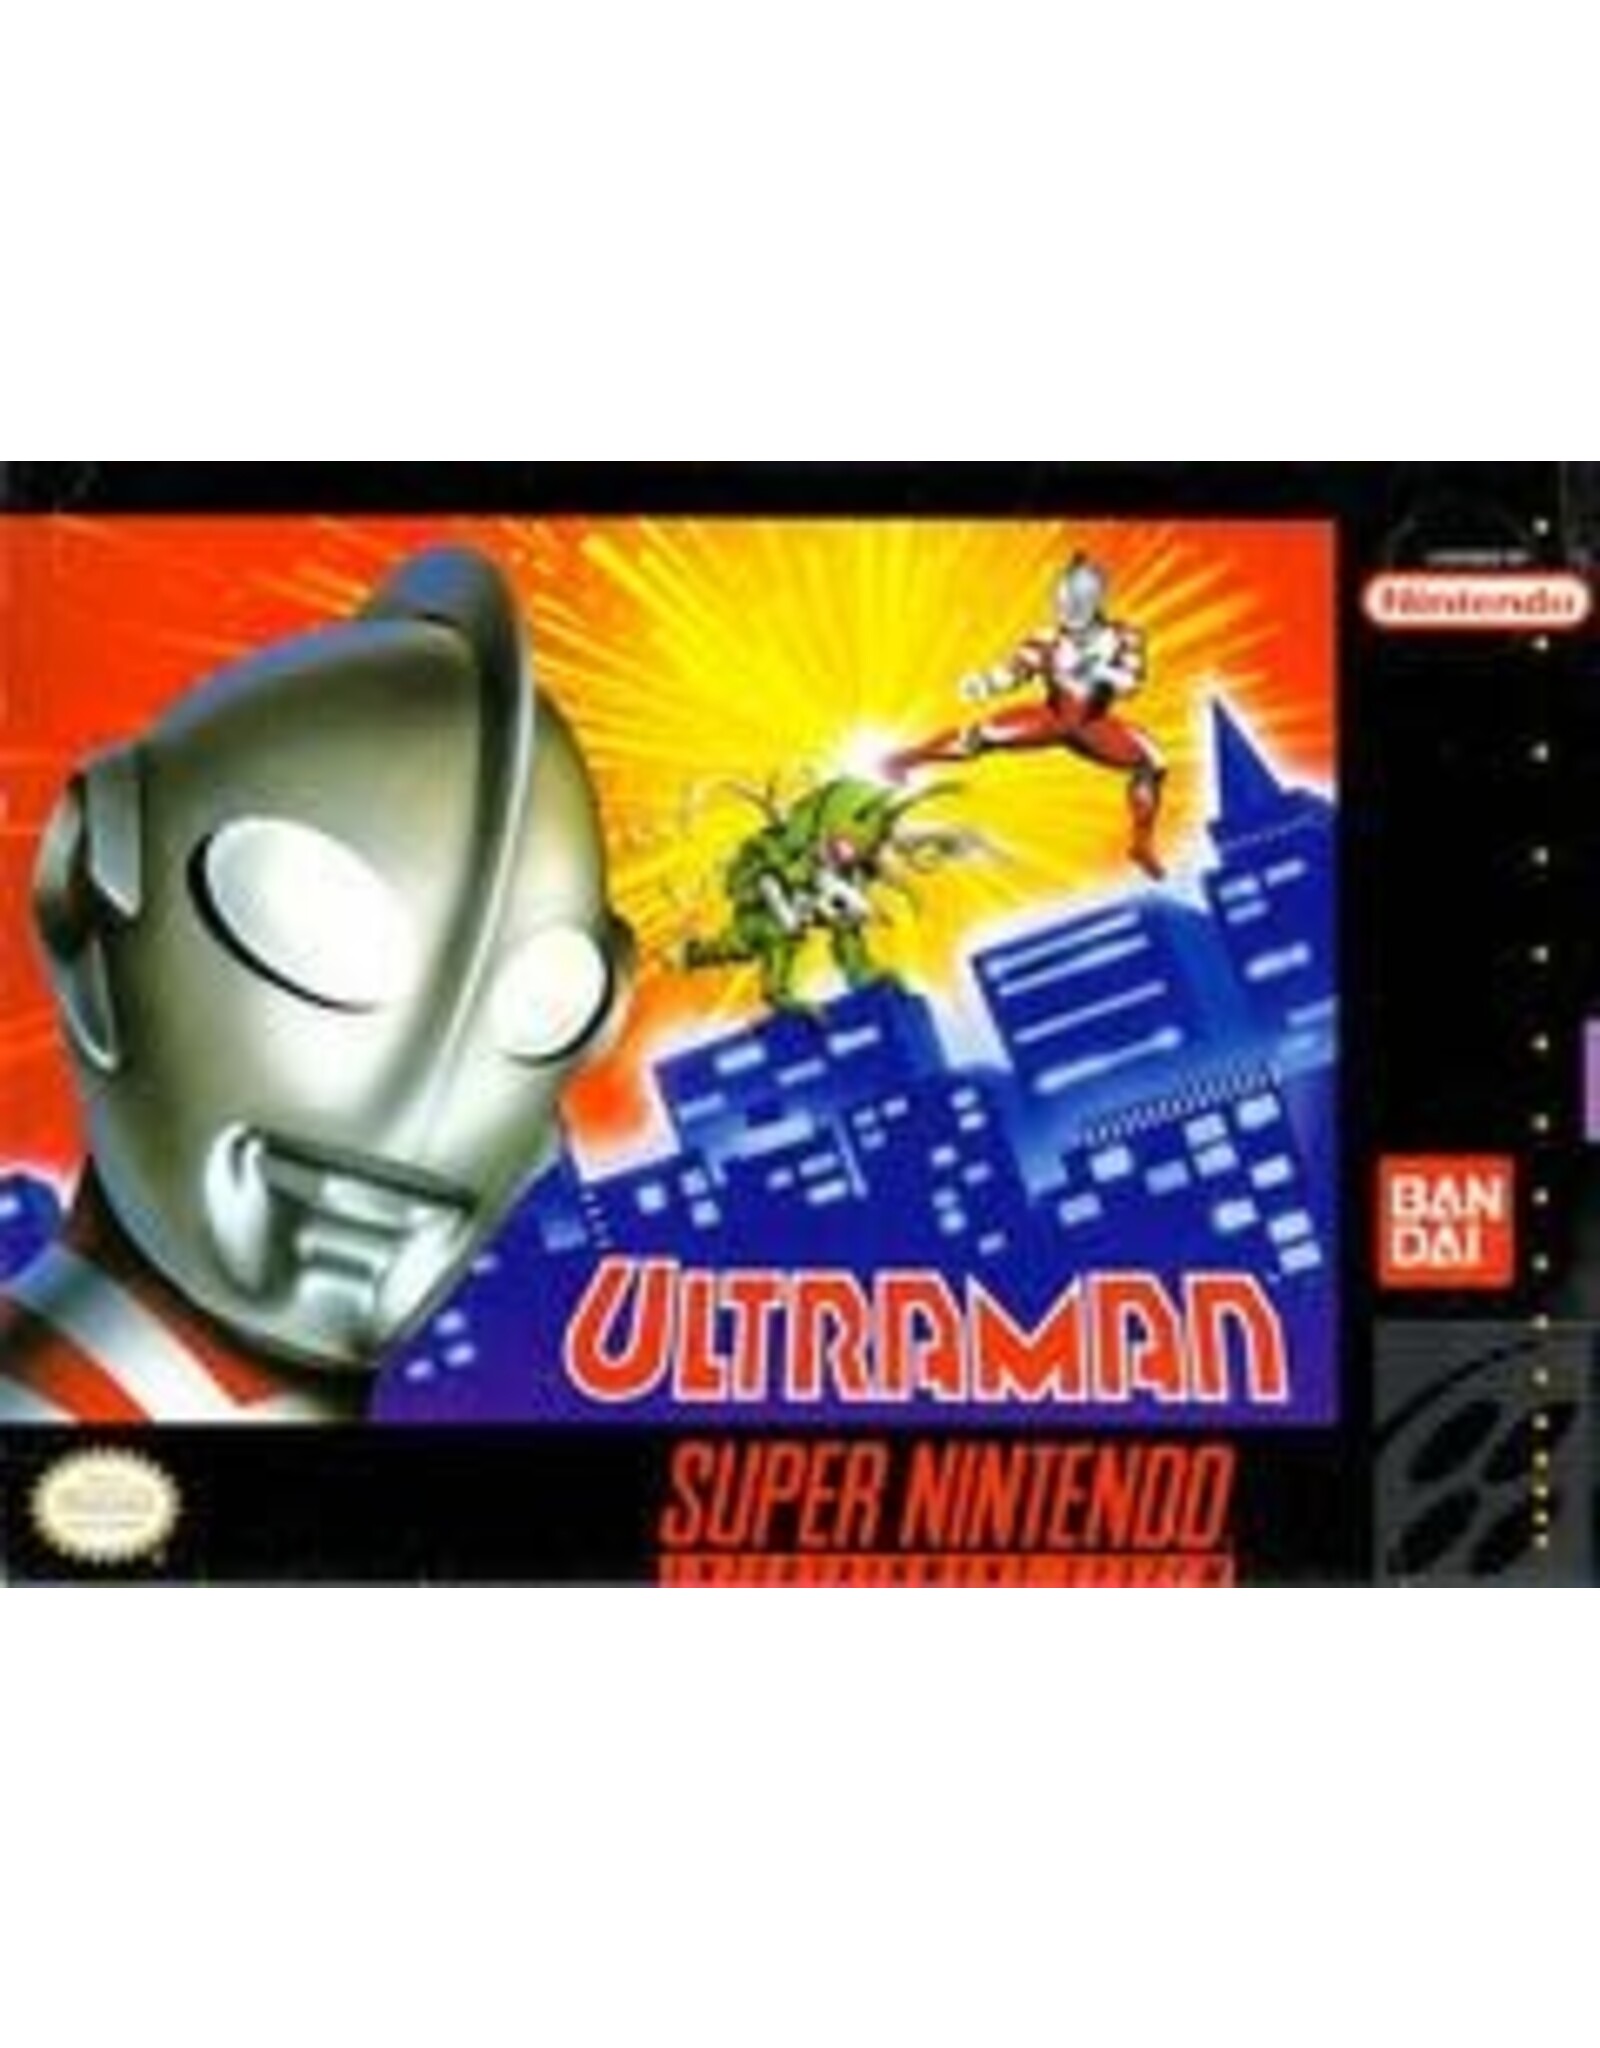 Super Nintendo Ultraman (Cart Only, Damaged Back Label)